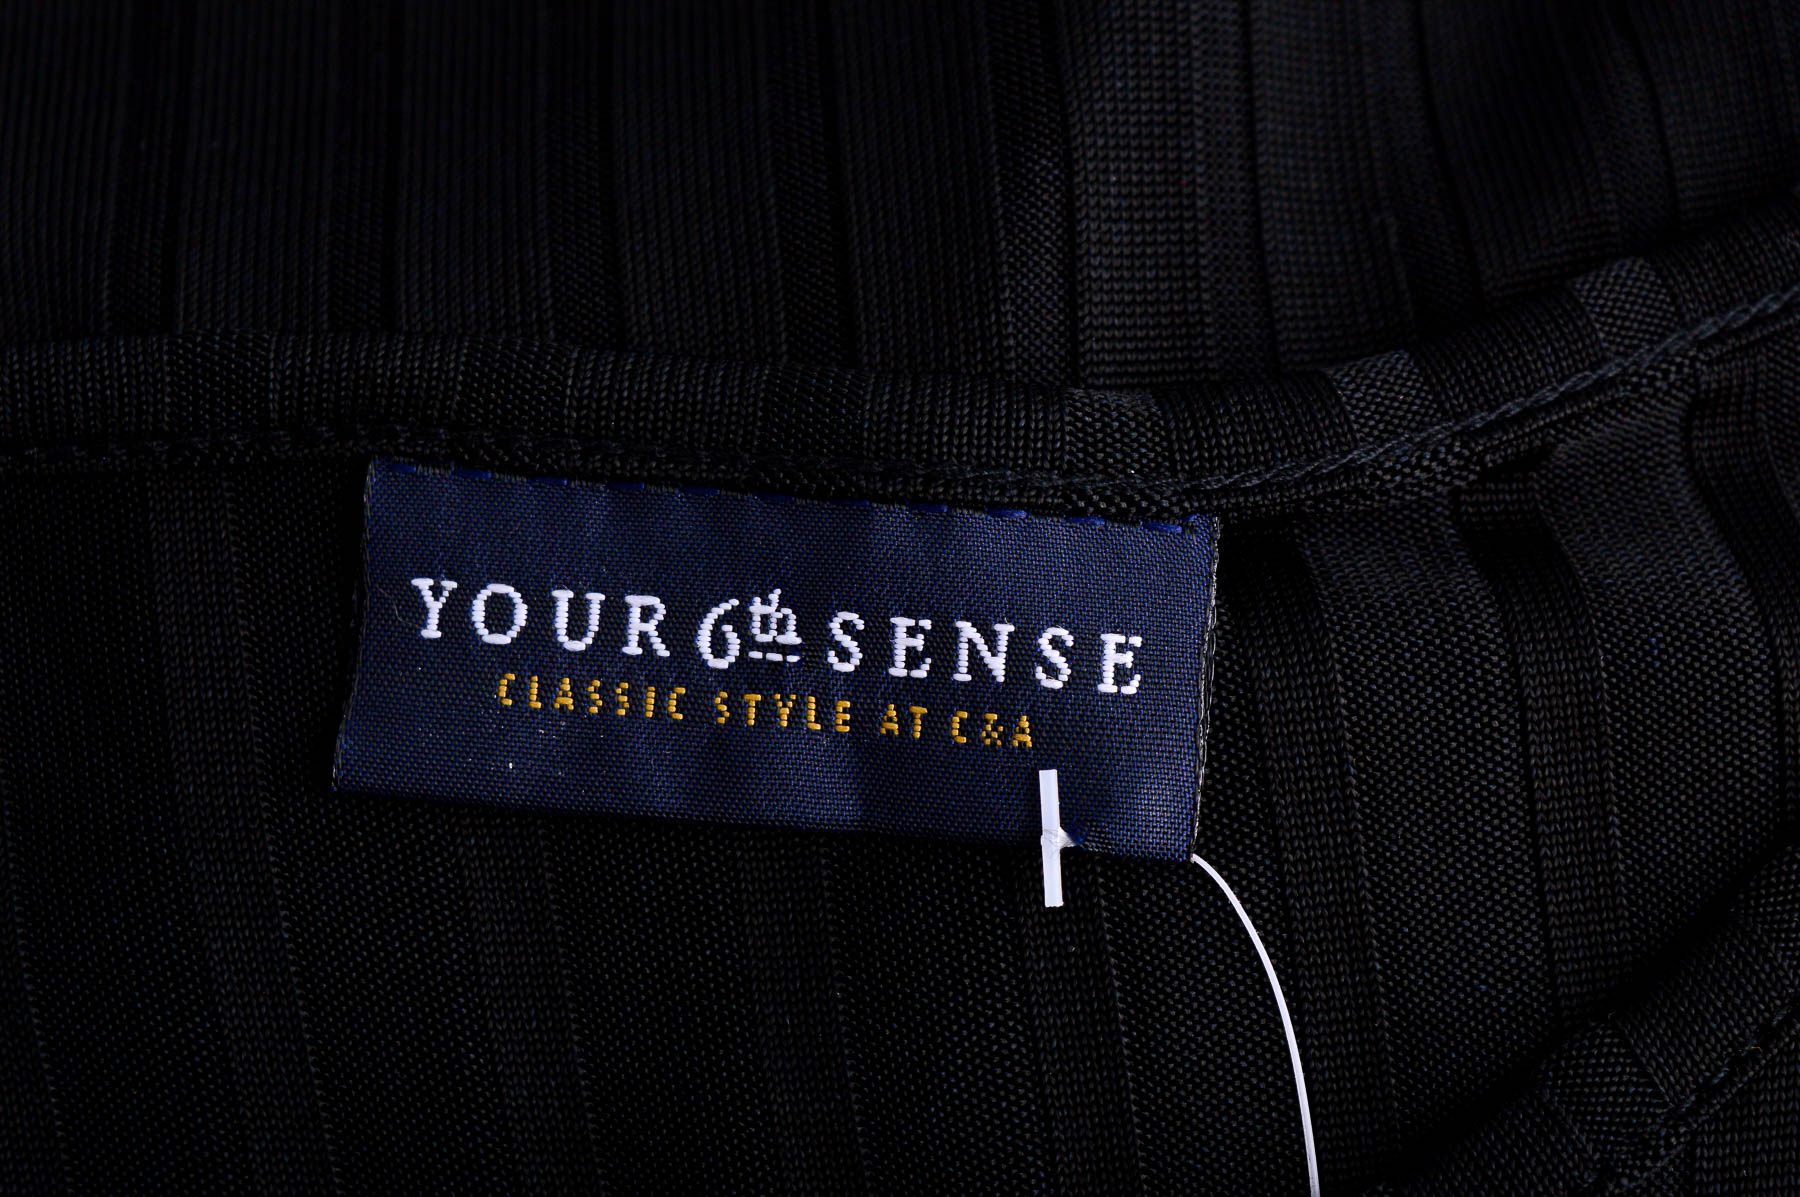 Women's t-shirt - Your Sixth Sense - 2